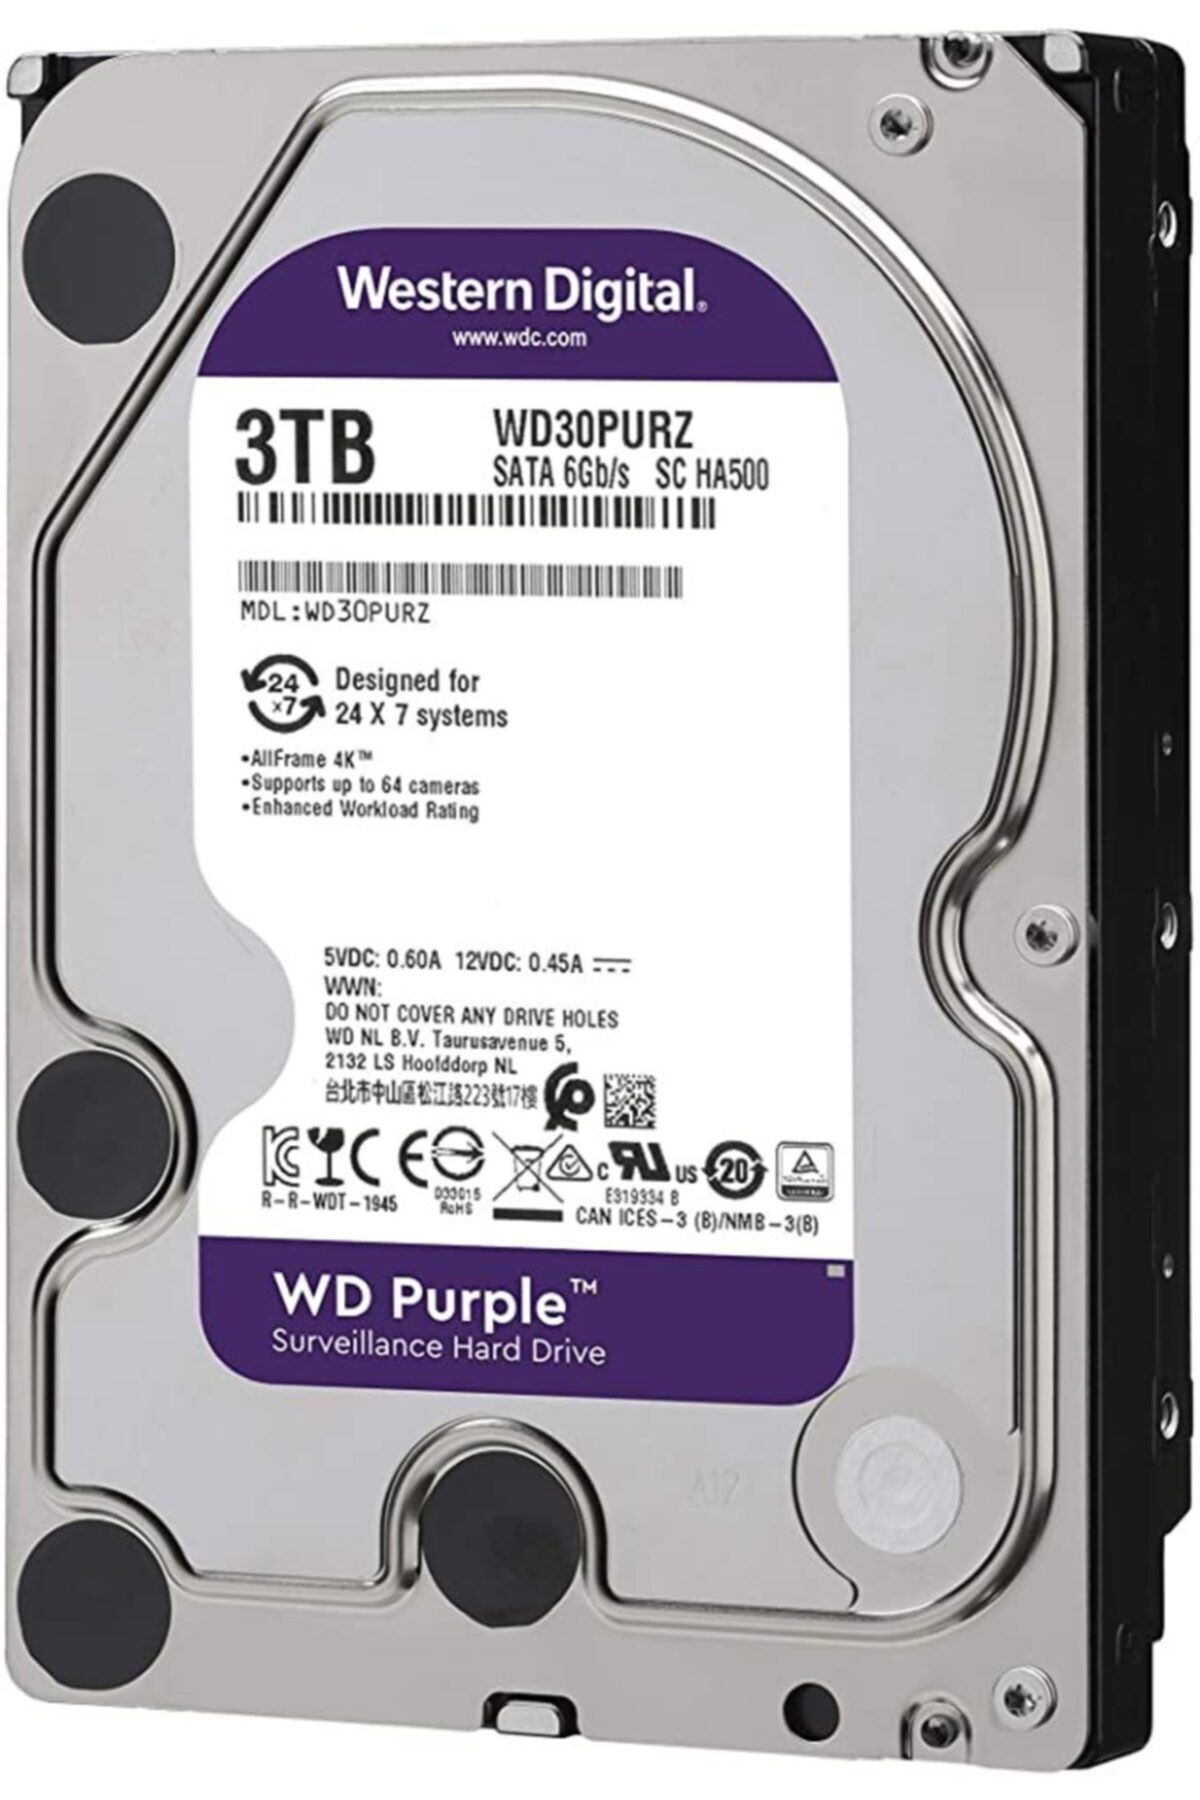 WESTERN DIGITAL Wd Purple 3 Tb 5400rpm 64mb Sata3 Güvenlik 7/24 Disk